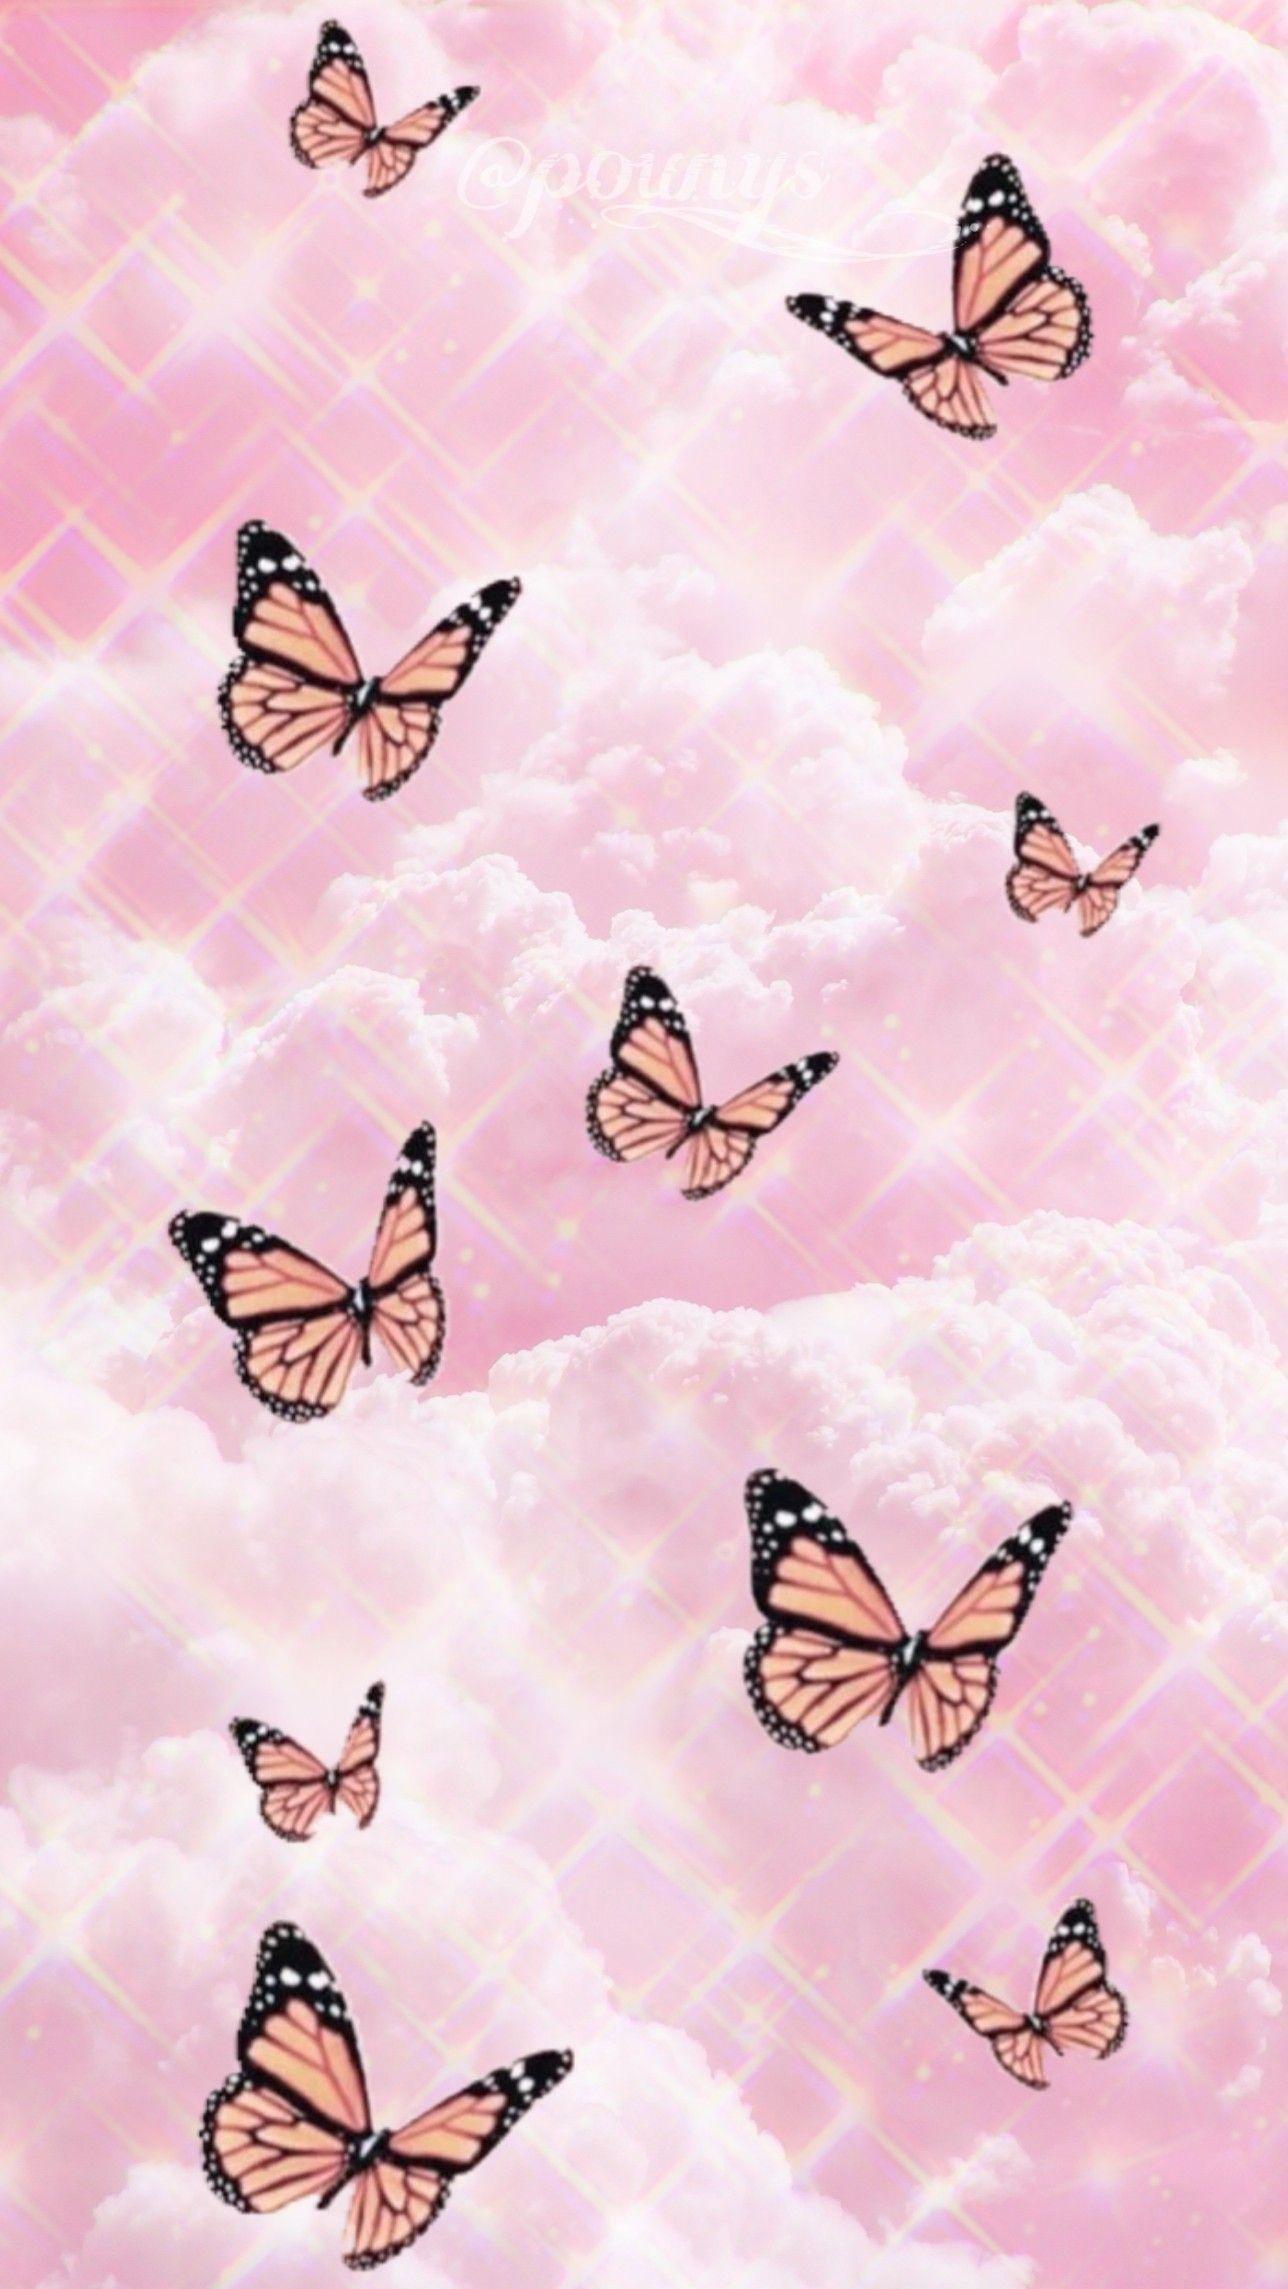 Hình nền bướm đáng yêu và màu hồng ngọt ngào tạo nên một không gian trang trí thú vị và độc đáo. Với họa tiết bướm nhỏ xinh trên nền màu hồng nhạt, bức ảnh này sẽ mang lại nét đẹp ngọt ngào và dịu dàng cho căn phòng của bạn. Hãy cùng xem để cảm nhận vẻ đẹp đầy thu hút của ảnh động này!